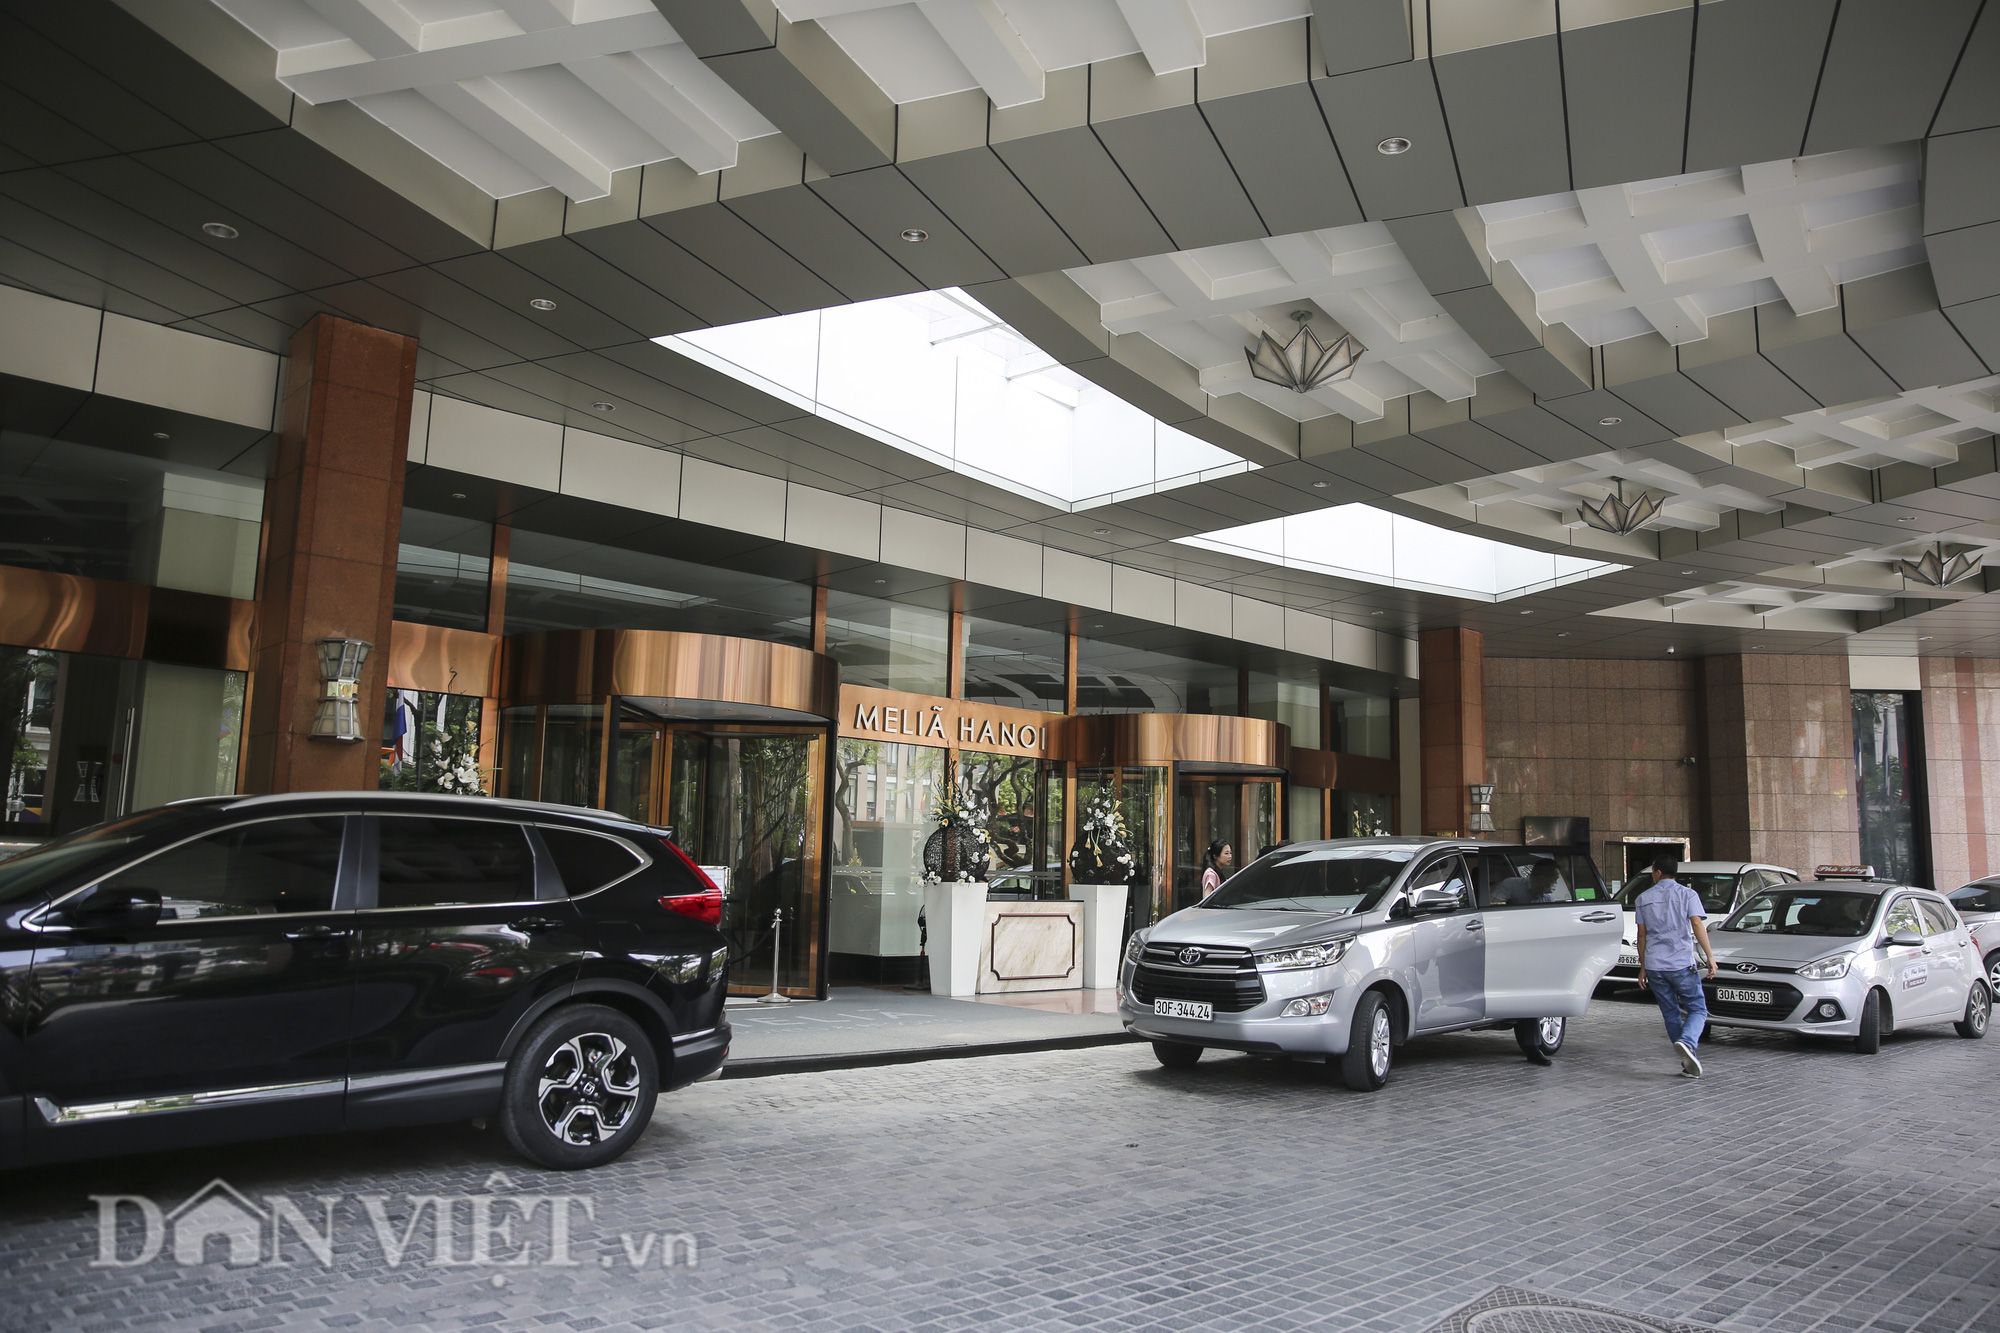 Nhiều khách sạn tại Hà Nội chưa thể mở cửa sau dịch Covid-19 - Ảnh 2.